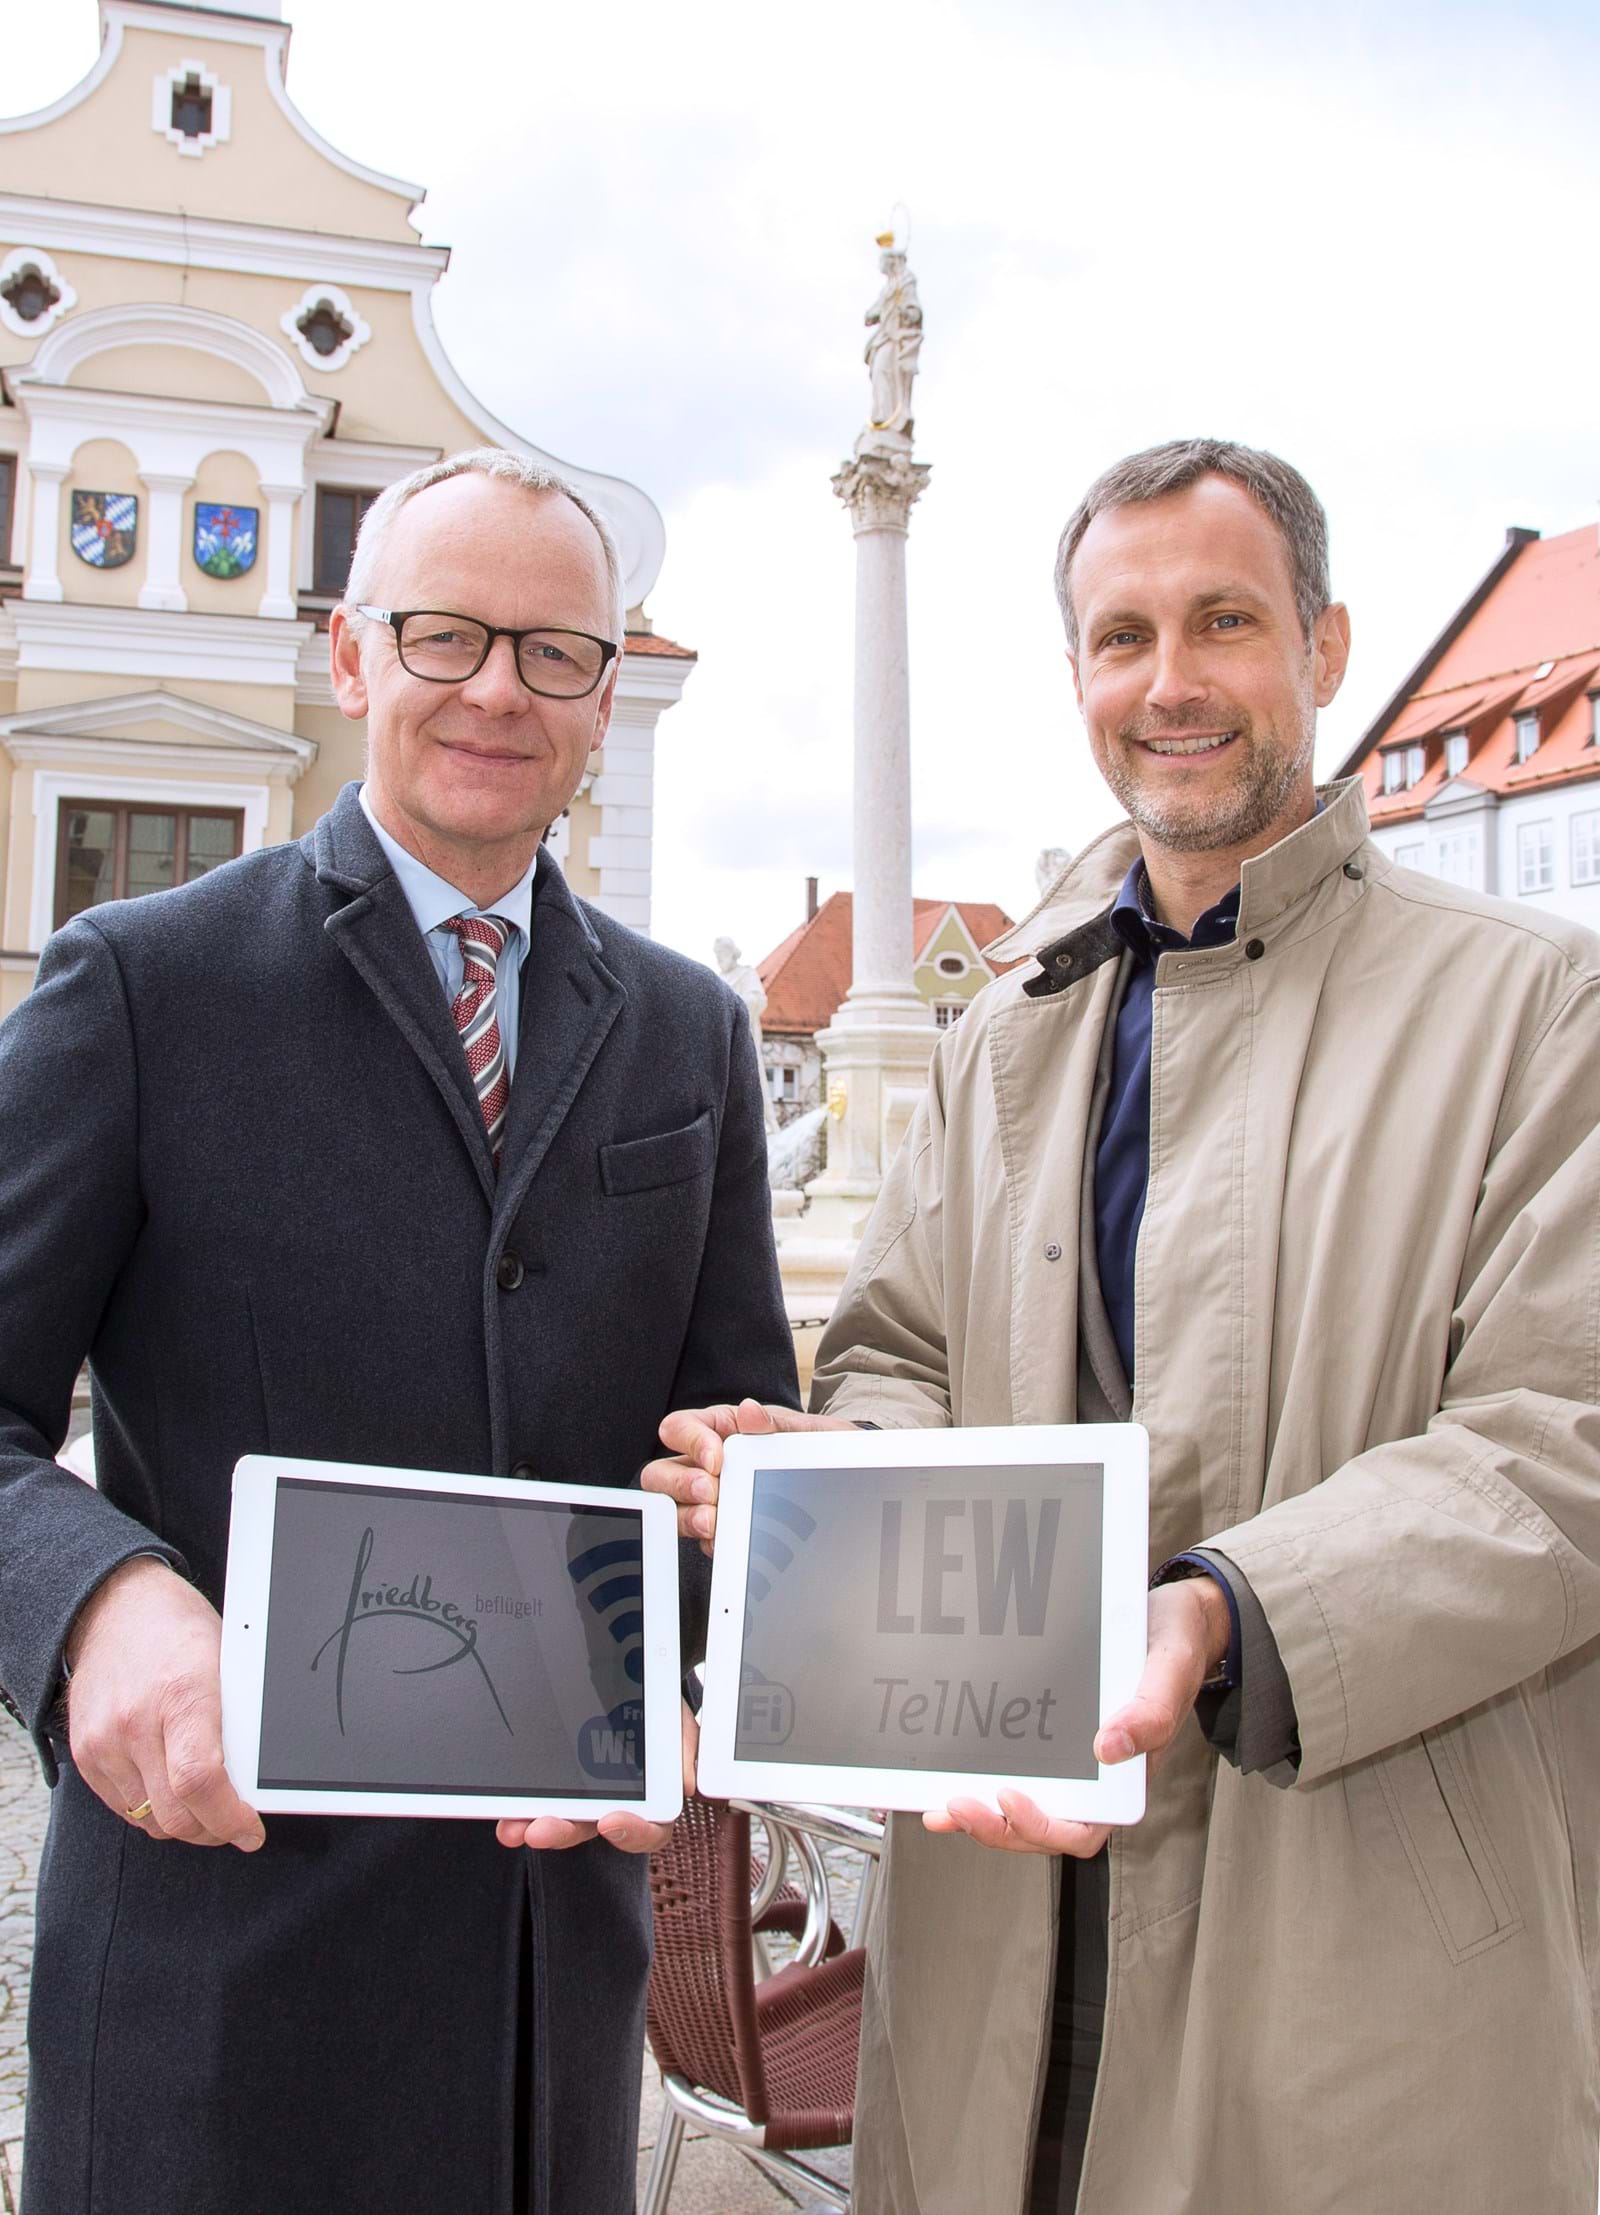 Mit der Einwahl ihrer Tablets vor dem Friedberger Rathaus nahmen LEW-Vorstandsmitglied Dr. Markus Litpher (li.) und Roland Eichmann, Erster Bürgermeister der Stadt Friedberg, gestern das kommunale Gratis-WiFi offiziell in Betrieb.